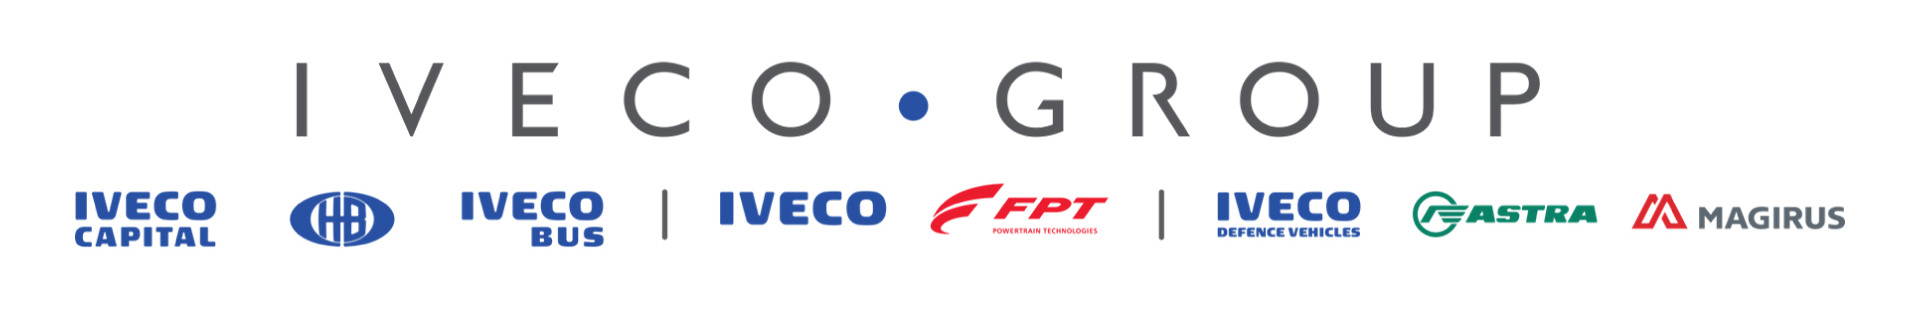 Новая организационная структура Iveco Group